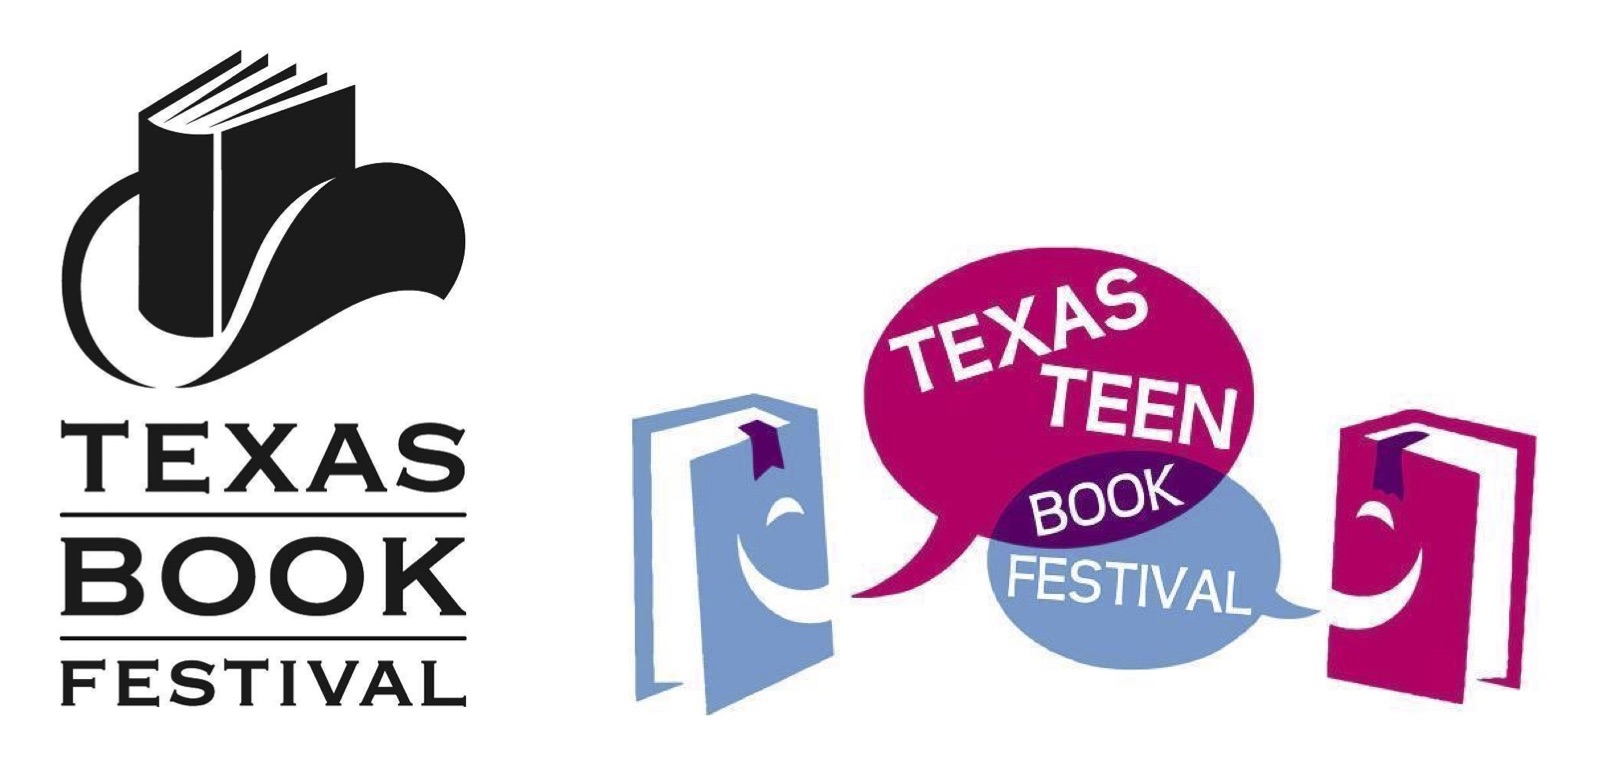 Texas Teen Book Festival 2016 Free Fun in Austin